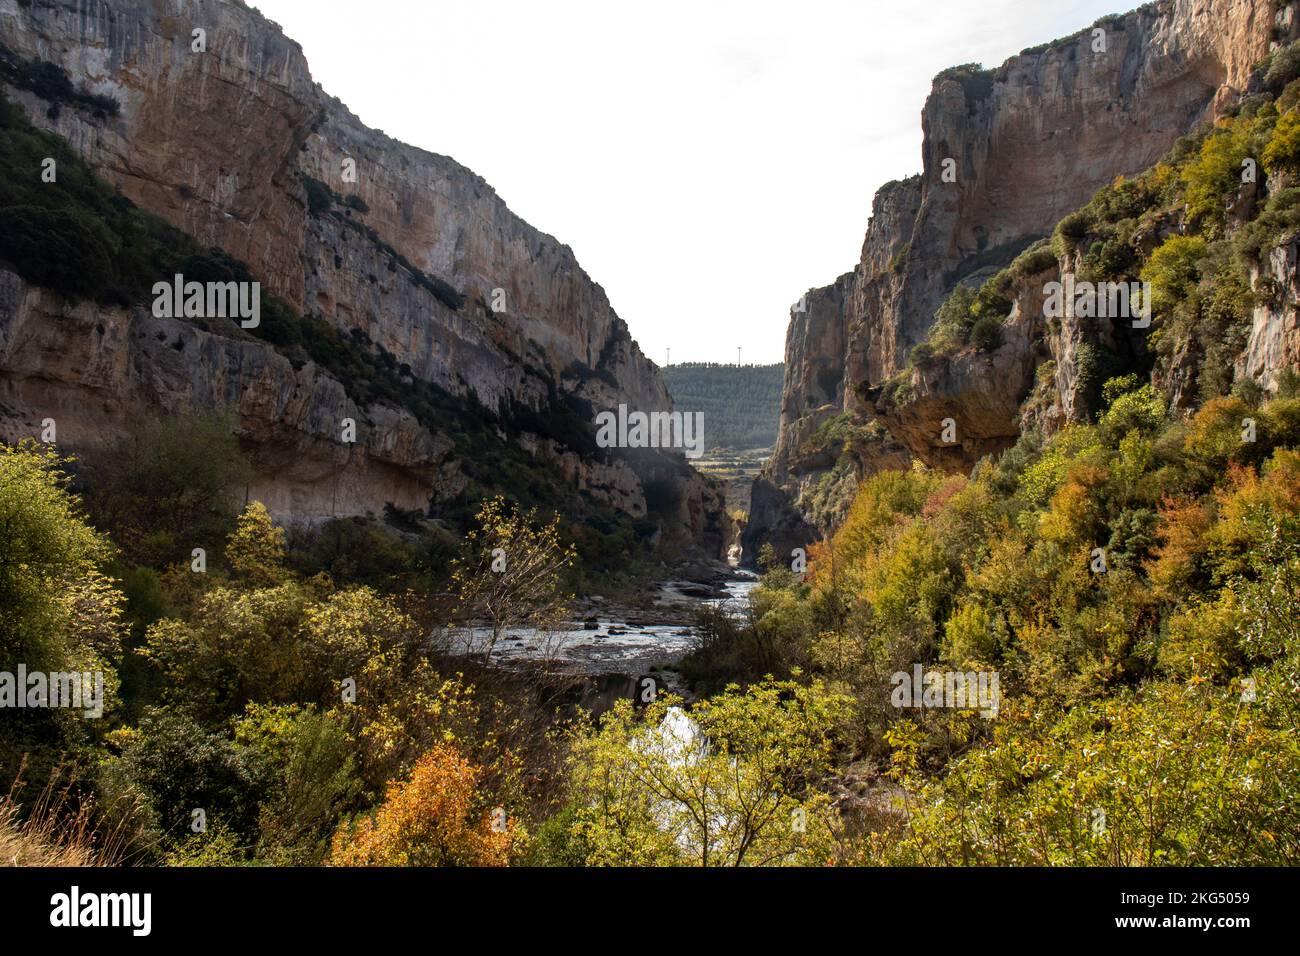 Foz o cañón de Lumbier en otoño, formado por el río Irati. Garganta de piedra caliza. Lugar mágico en Navarra, Espagne Banque D'Images